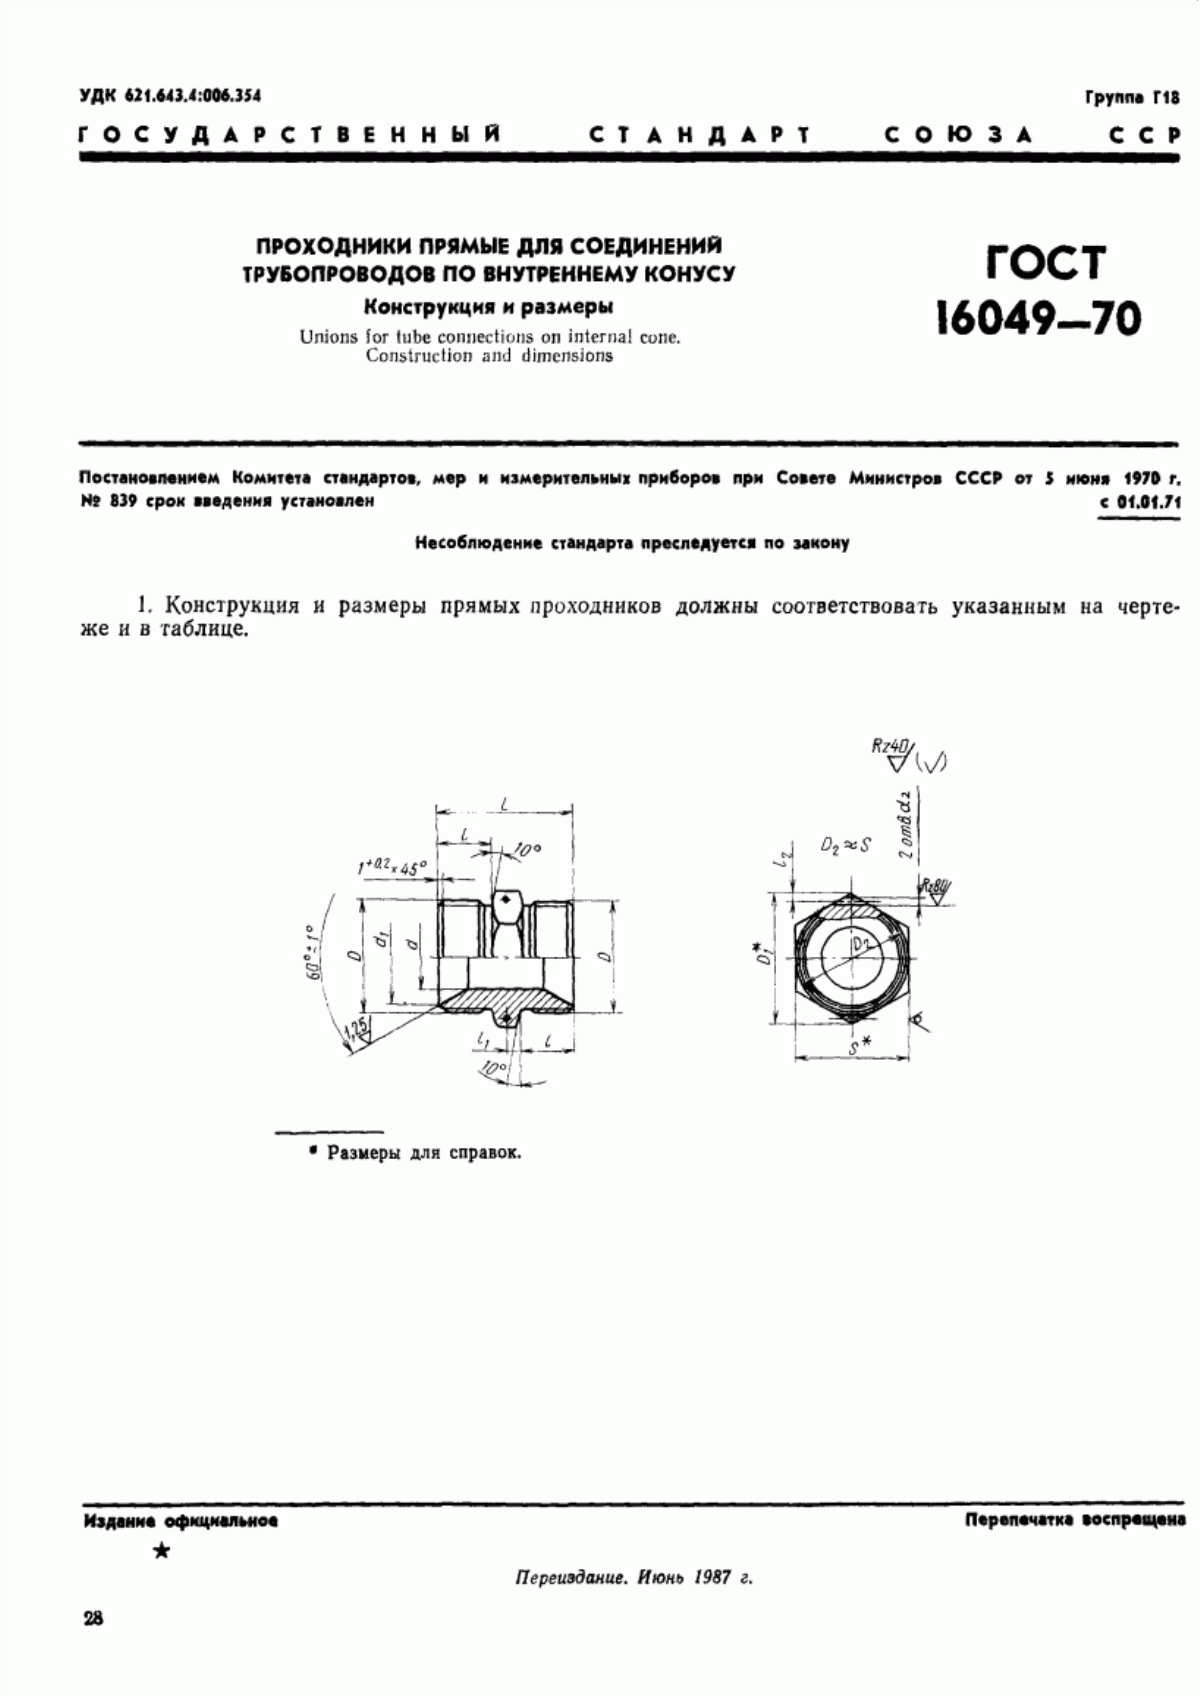 ГОСТ 16049-70 Проходники прямые для соединений трубопроводов по внутреннему конусу. Конструкция и размеры